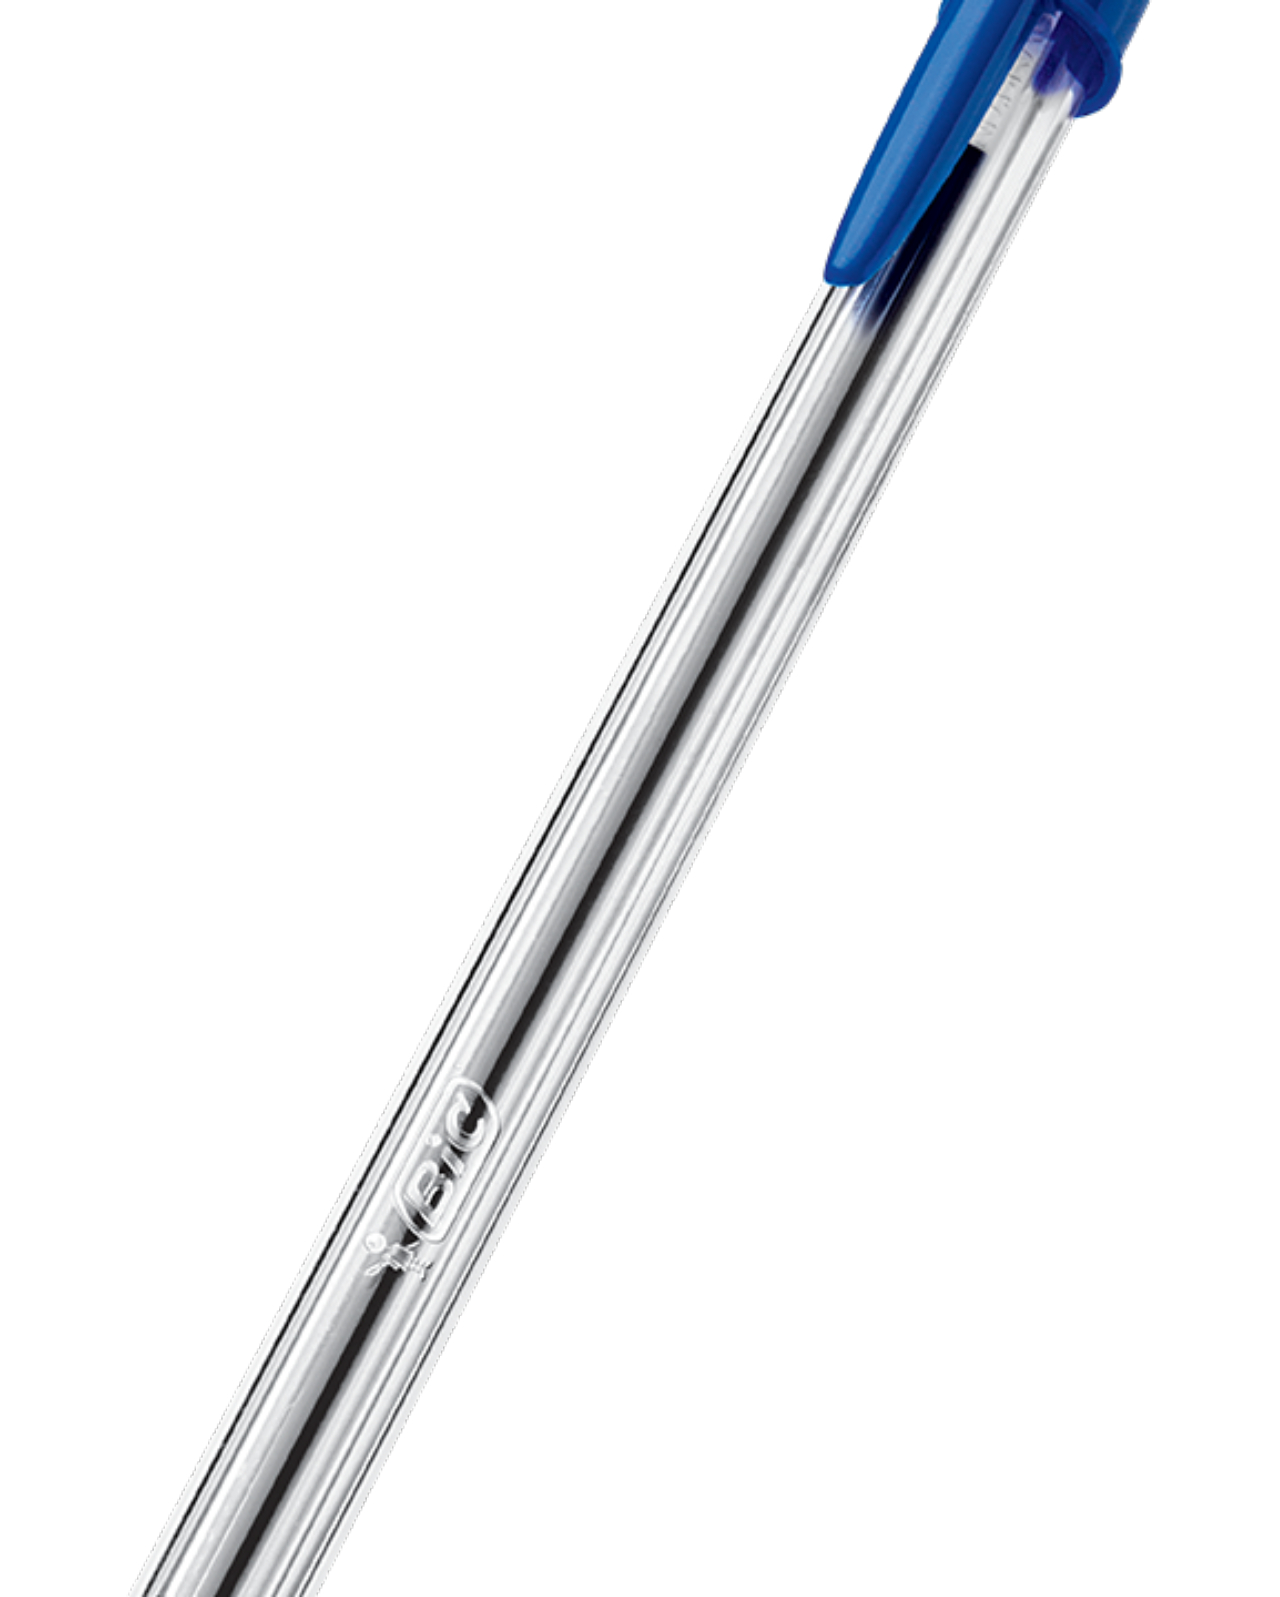 Simples e, ao mesmo tempo, complexo, o design da caneta e seu tom de azul inconfundível são as marcas registradas da BIC.  